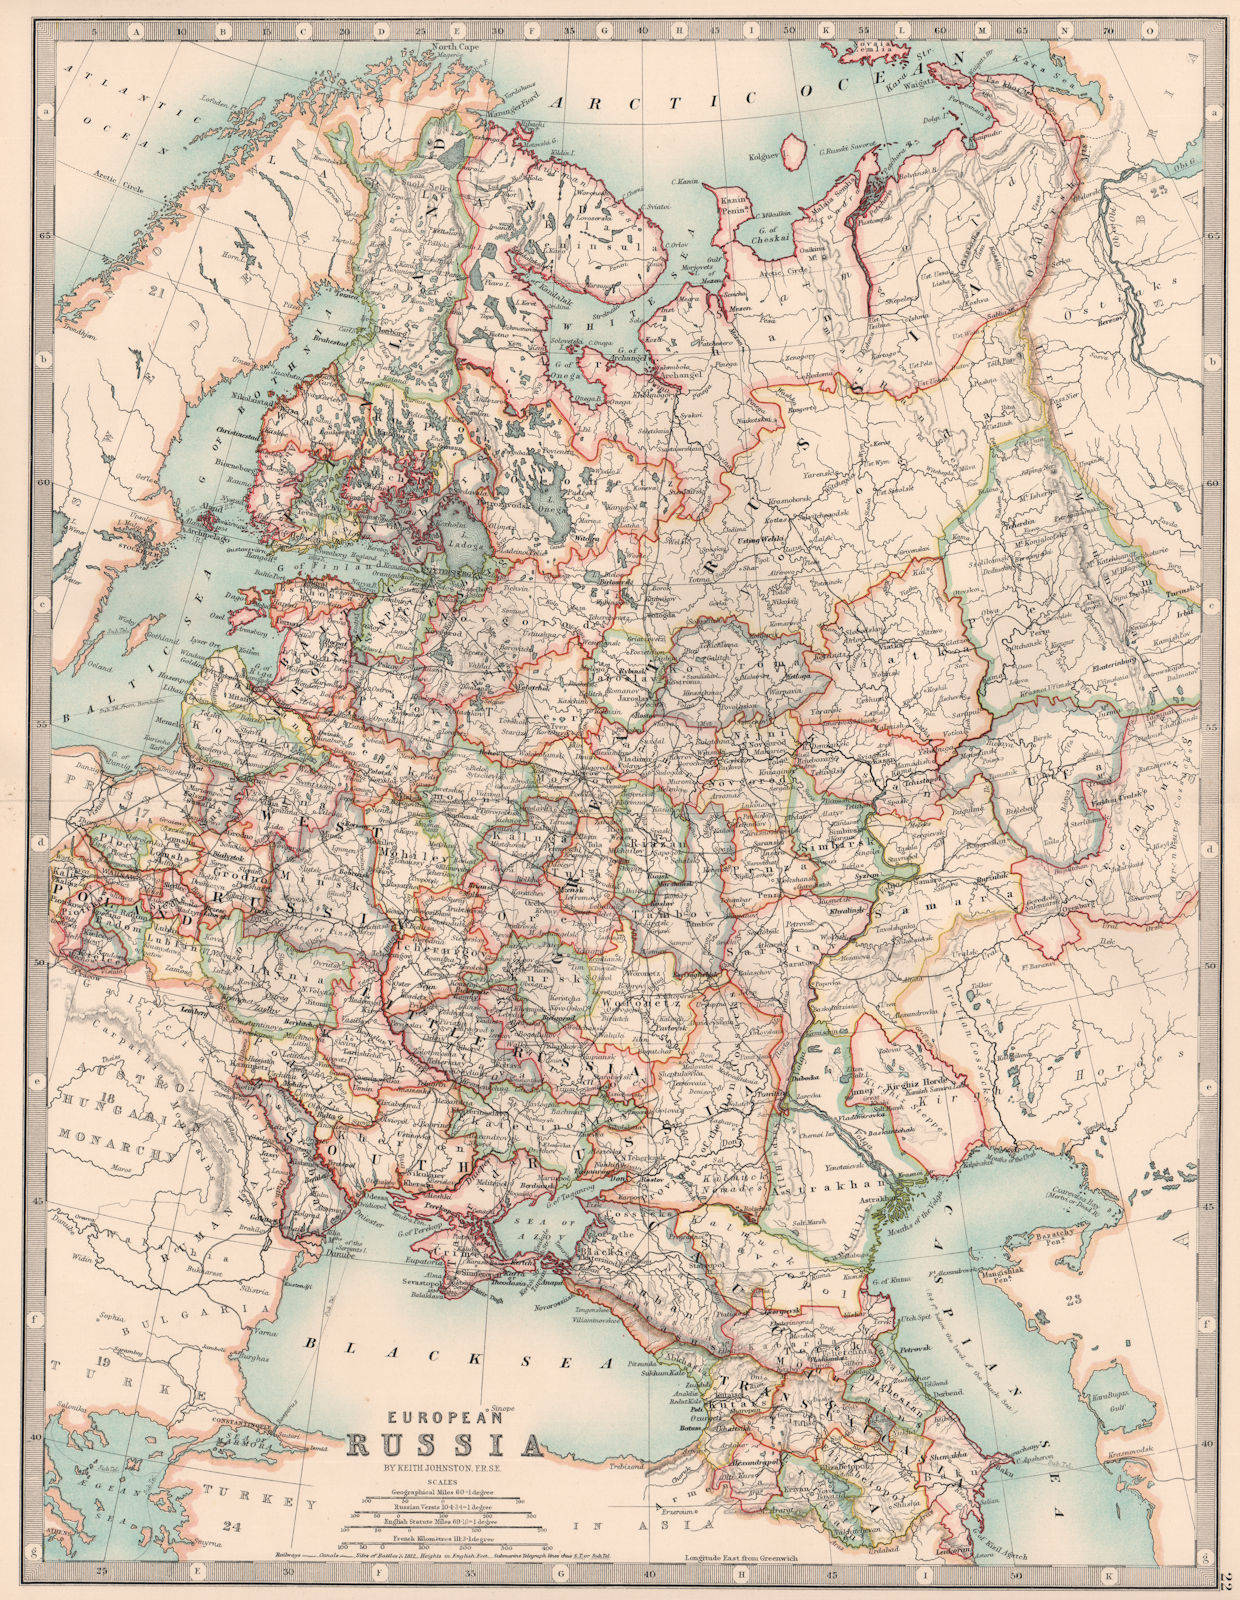 EUROPEAN RUSSIA. Including Finland Caucasus Poland Ukraine. JOHNSTON 1906 map